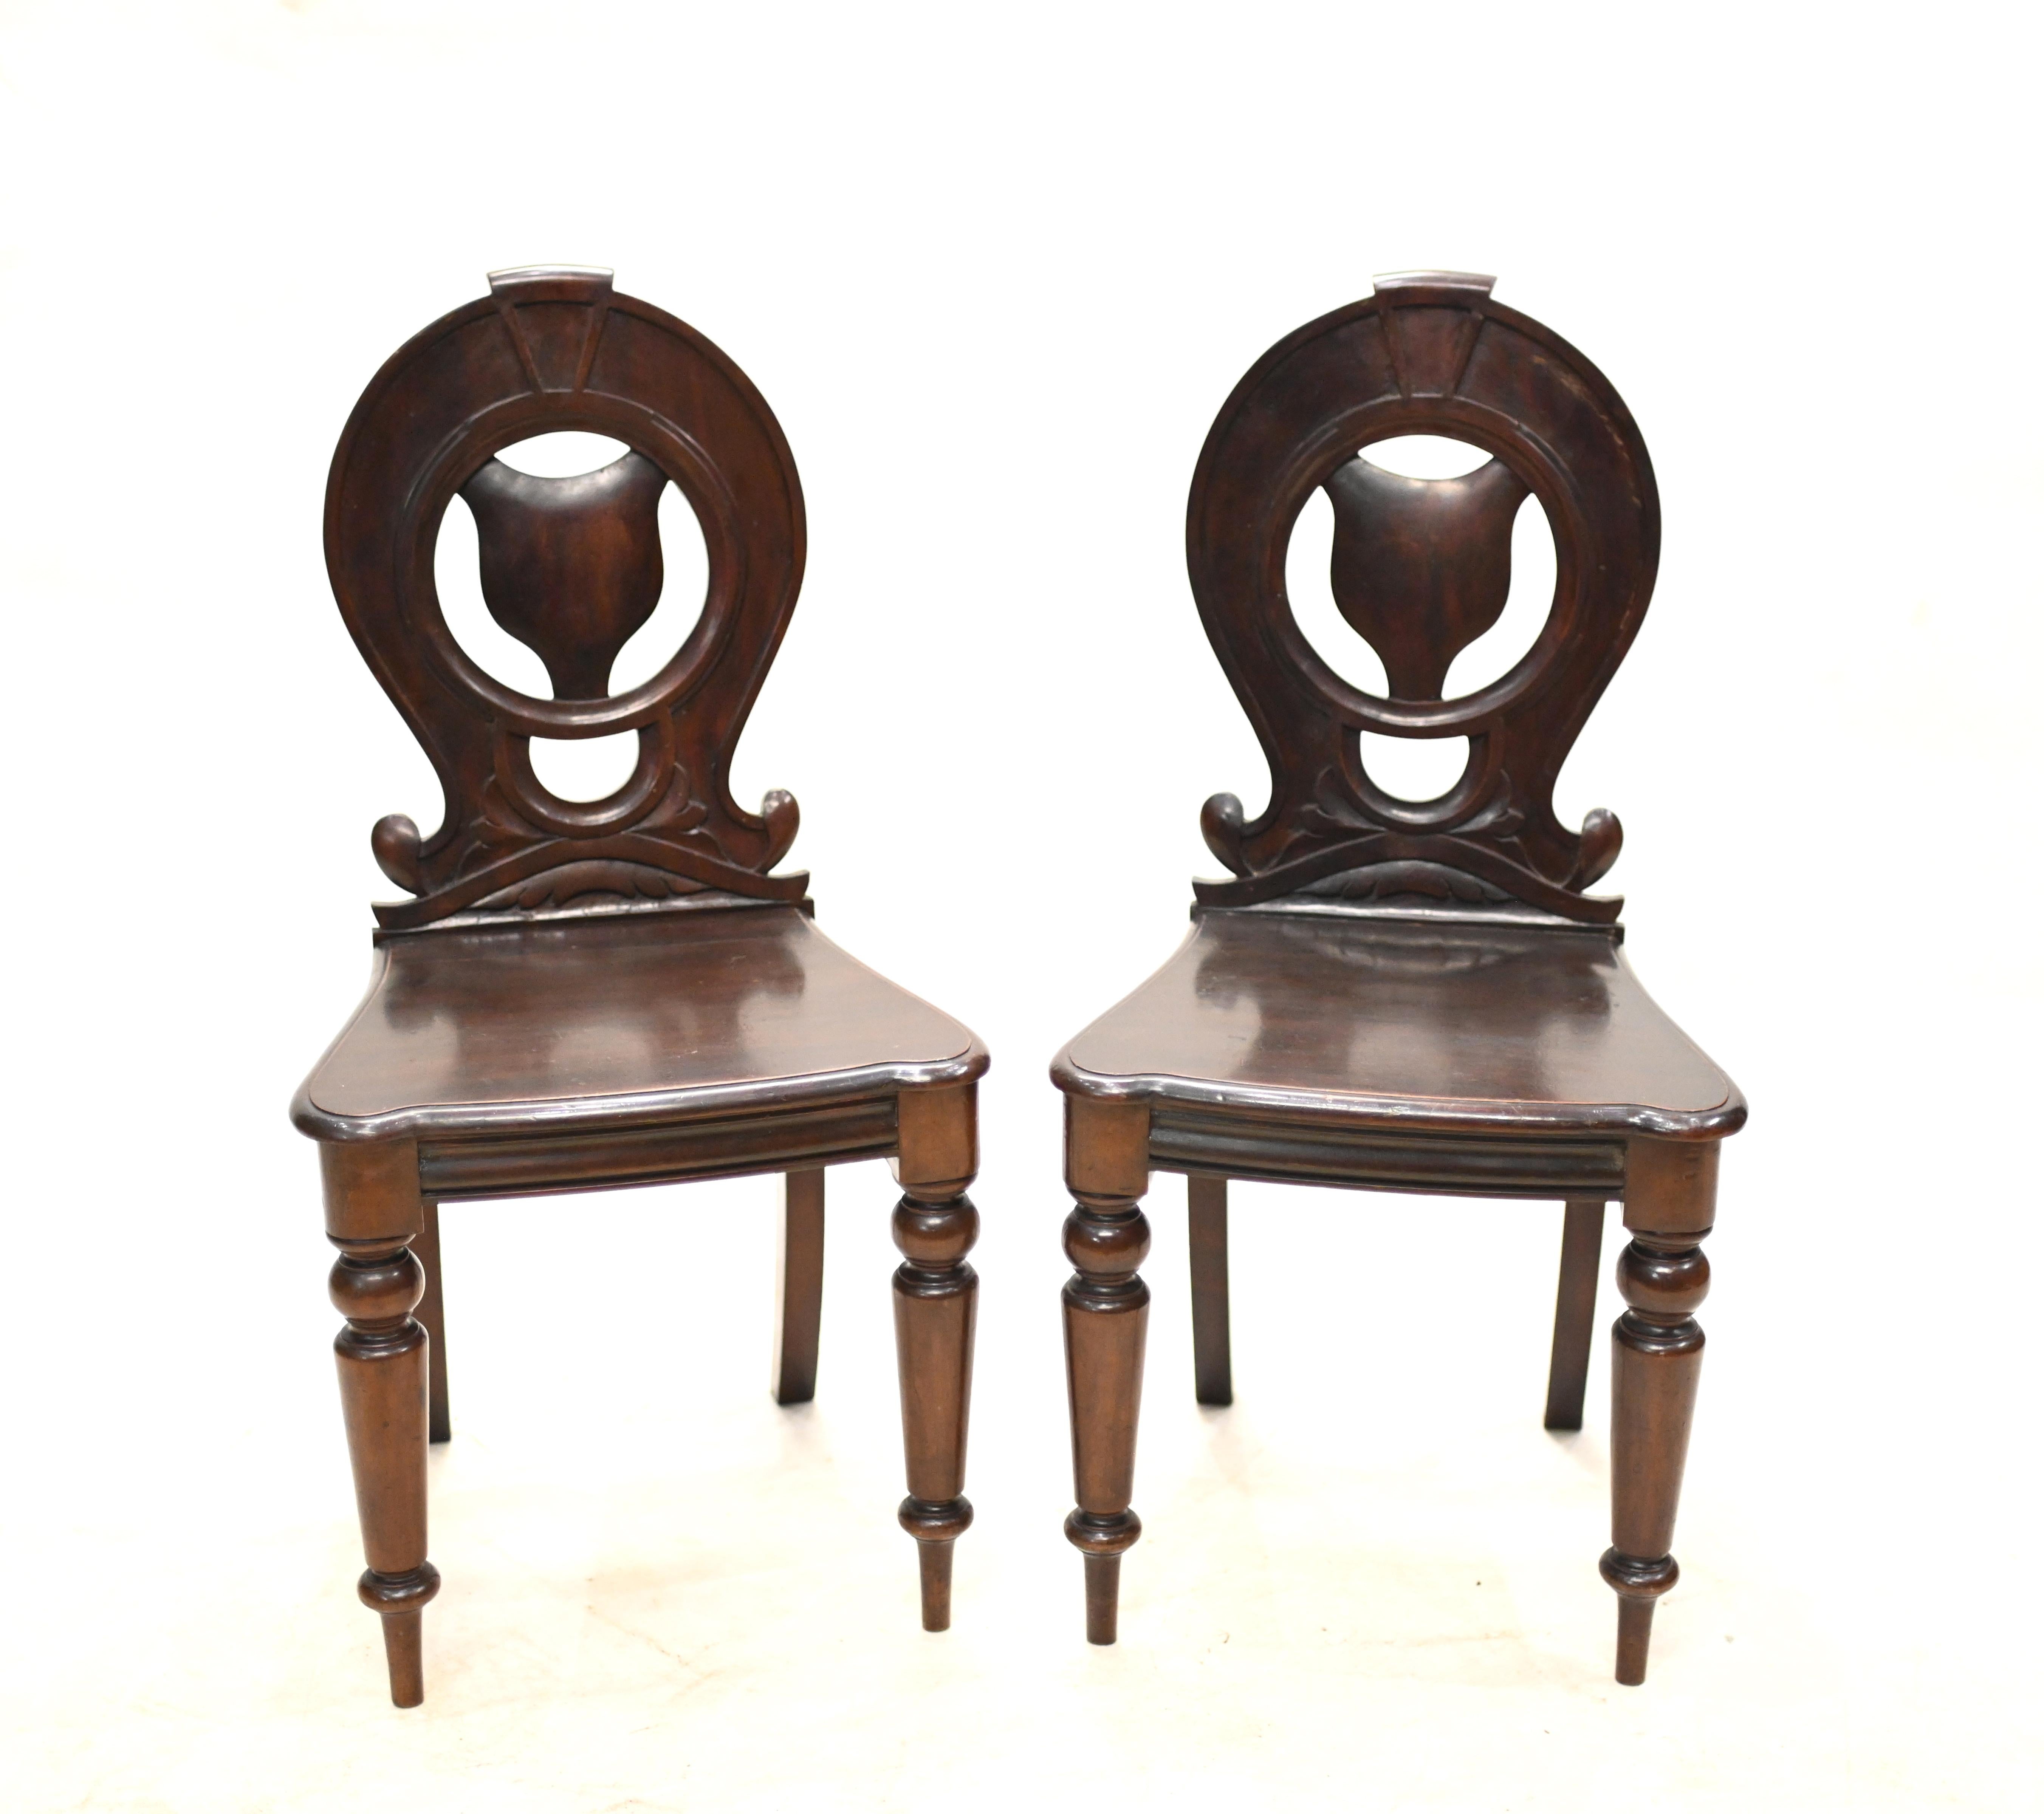 Elegante paire de chaises de hall victoriennes en acajou
Circa 1840 sur cette paire de chaises raffinées
Très beau design et très bien adapté comme chaise d'appoint.
Acheté dans une résidence privée du quartier de Bloomsbury à Londres
Offert en très